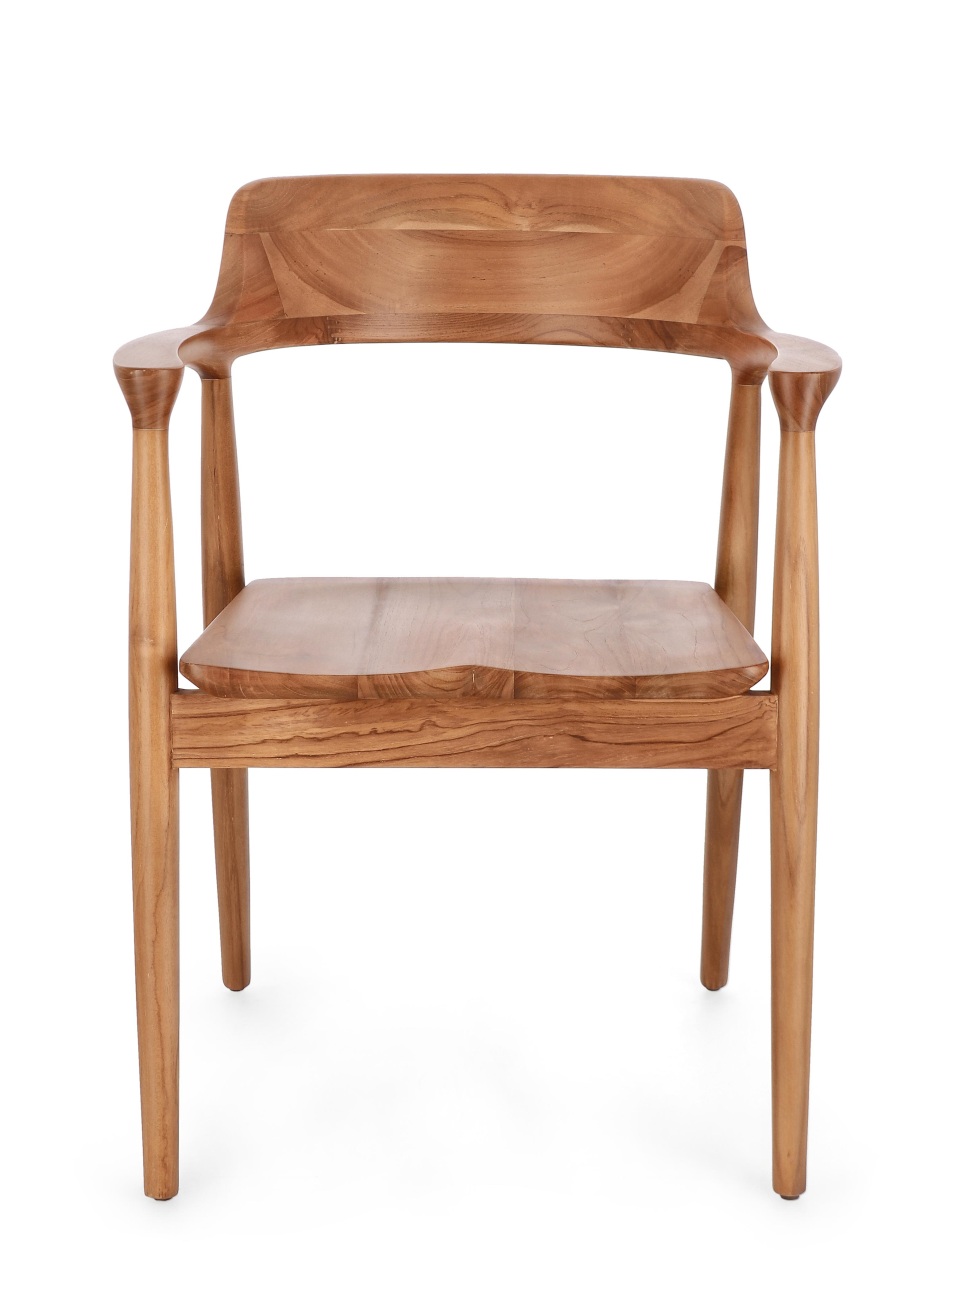 Der Esszimmerstuhl Suzy überzeugt mit seinem modernen Stil. Gefertigt wurde er aus Teakholz, welcher einen natürlichen Farbton besitzt. Der Stuhl besitzt eine Sitzhöhe von 46 cm.